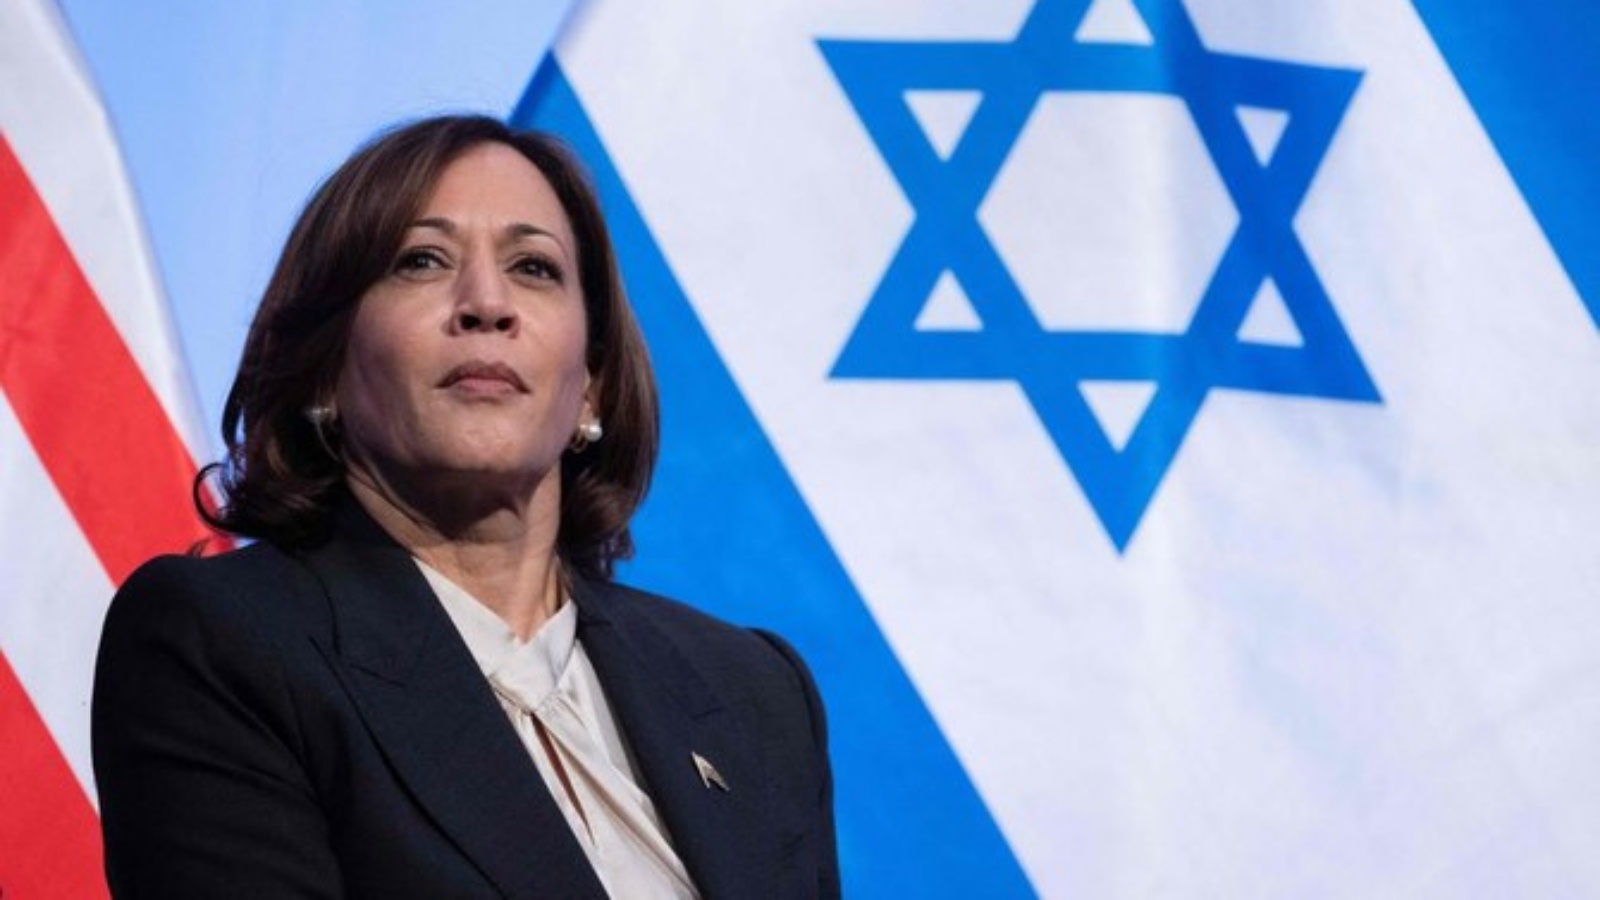 نائبة الرئيس الأميركي كامالا هاريس تقول إن الديمقراطية الإسرائيلية تتطلب 